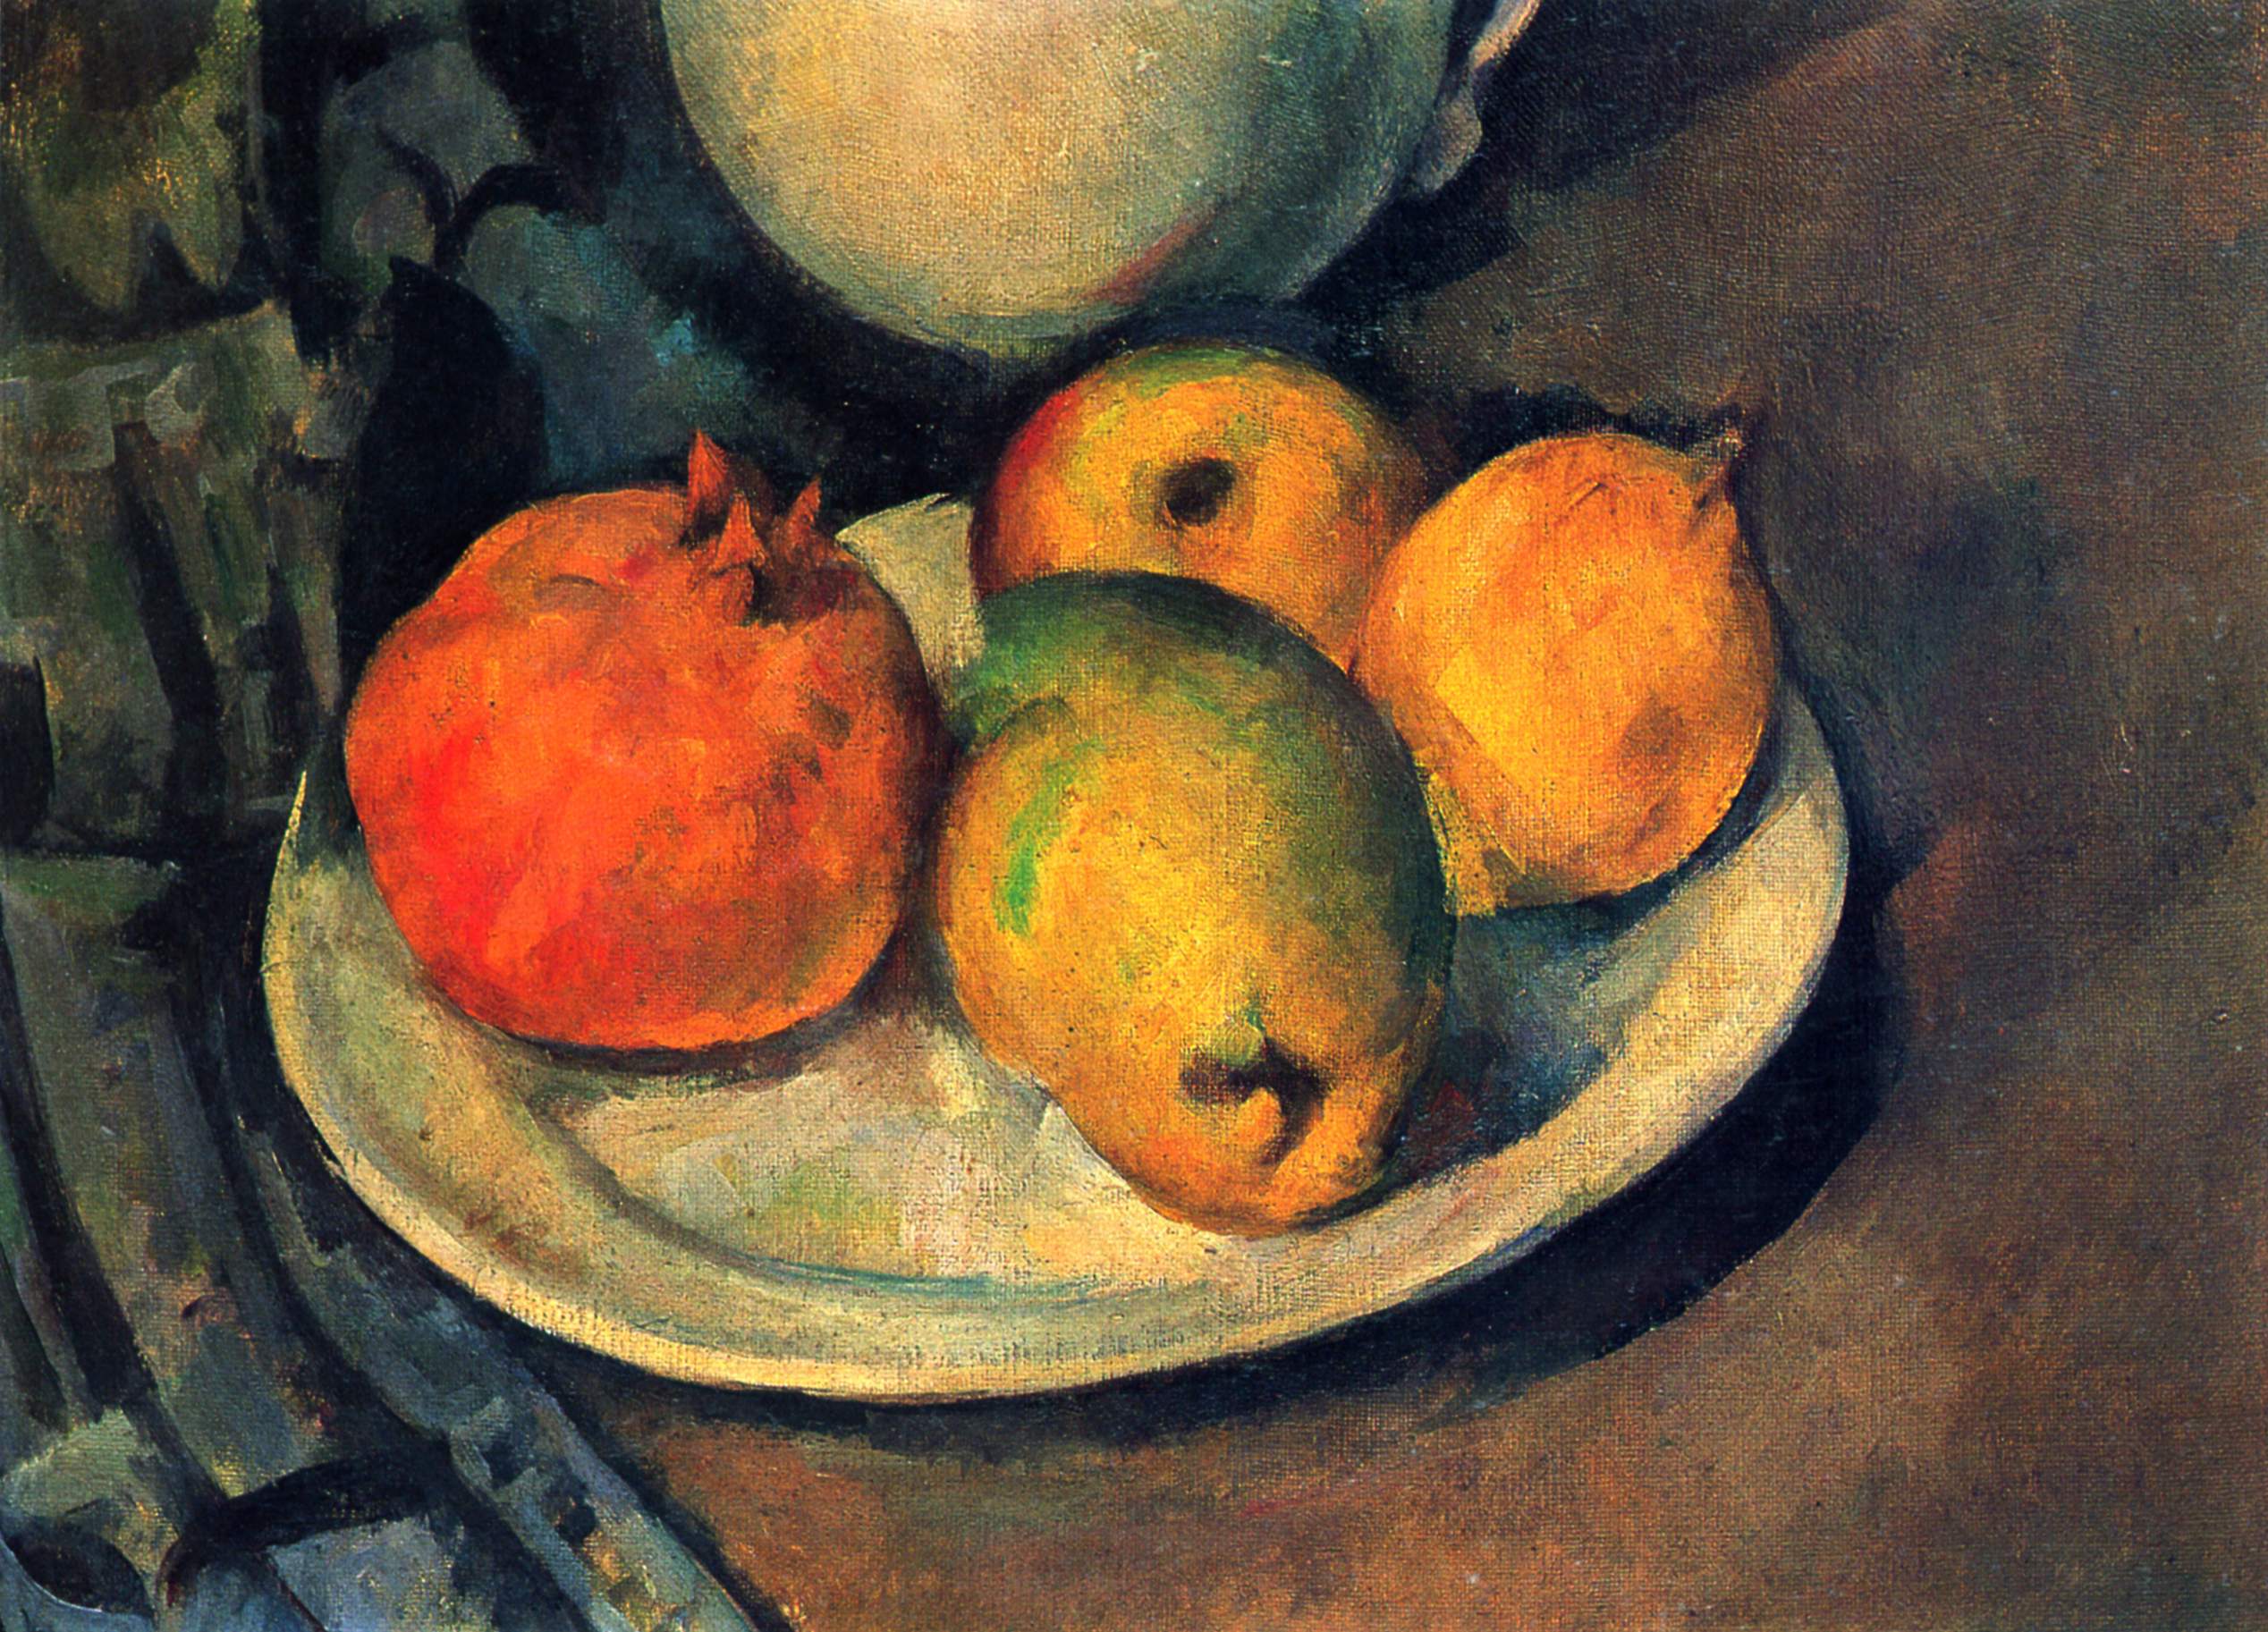 石榴和梨的靜物畫 by Paul Cézanne - 1890 - 27 x 36 公分 